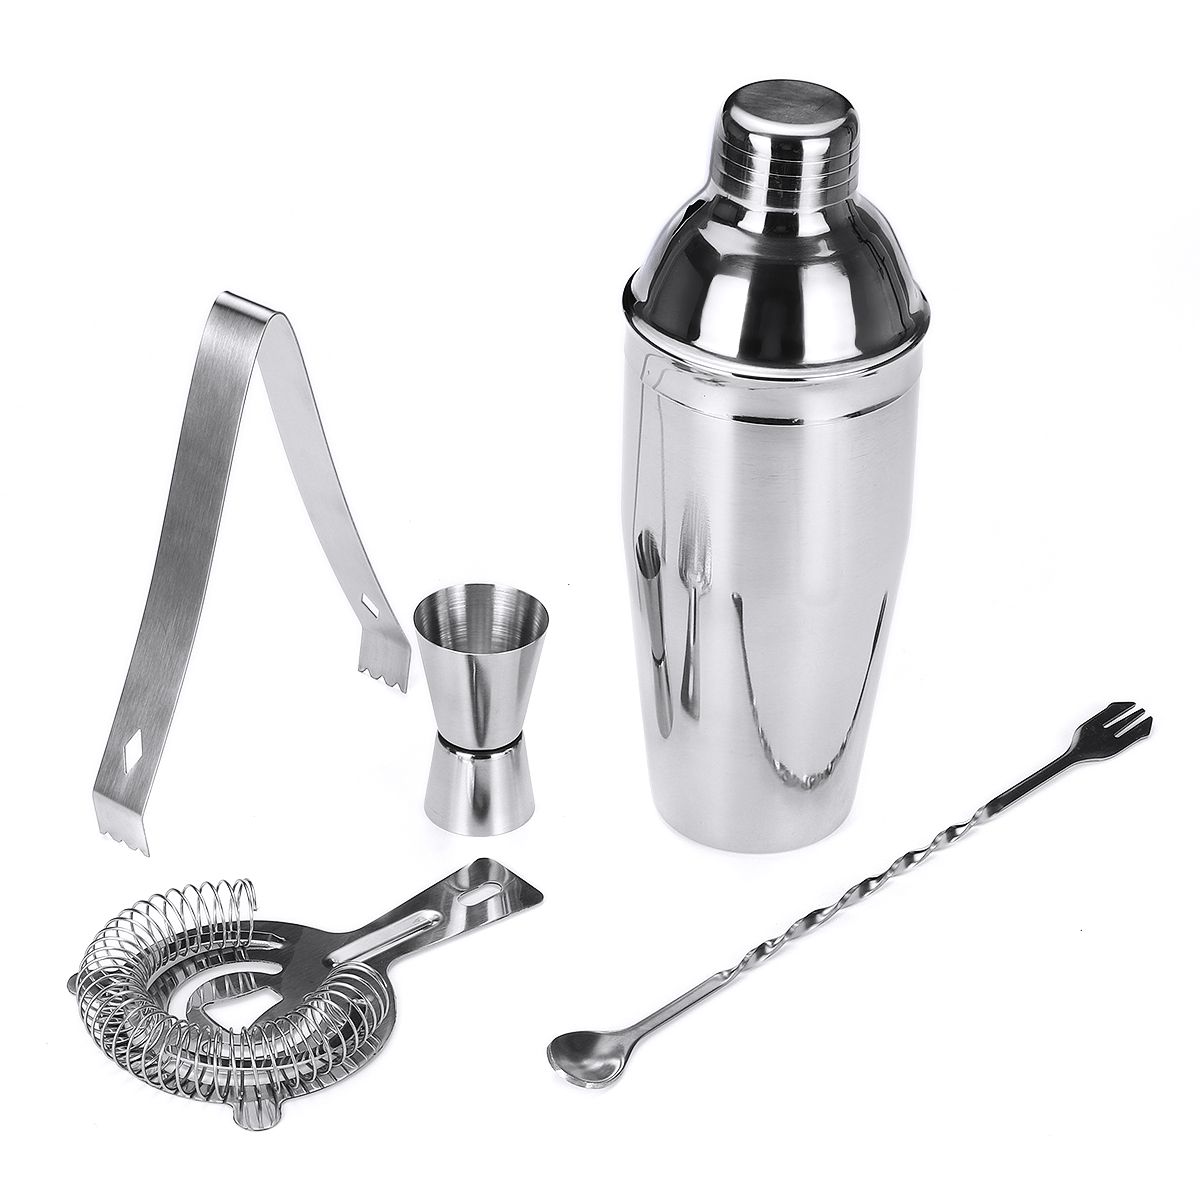 5pcs-Cocktail-Shaker-Set-Jigger-Mixing-Spoon-Tong-Barware-Bartender-Tools-wWood-Storage-Stand-Bars-M-1587202